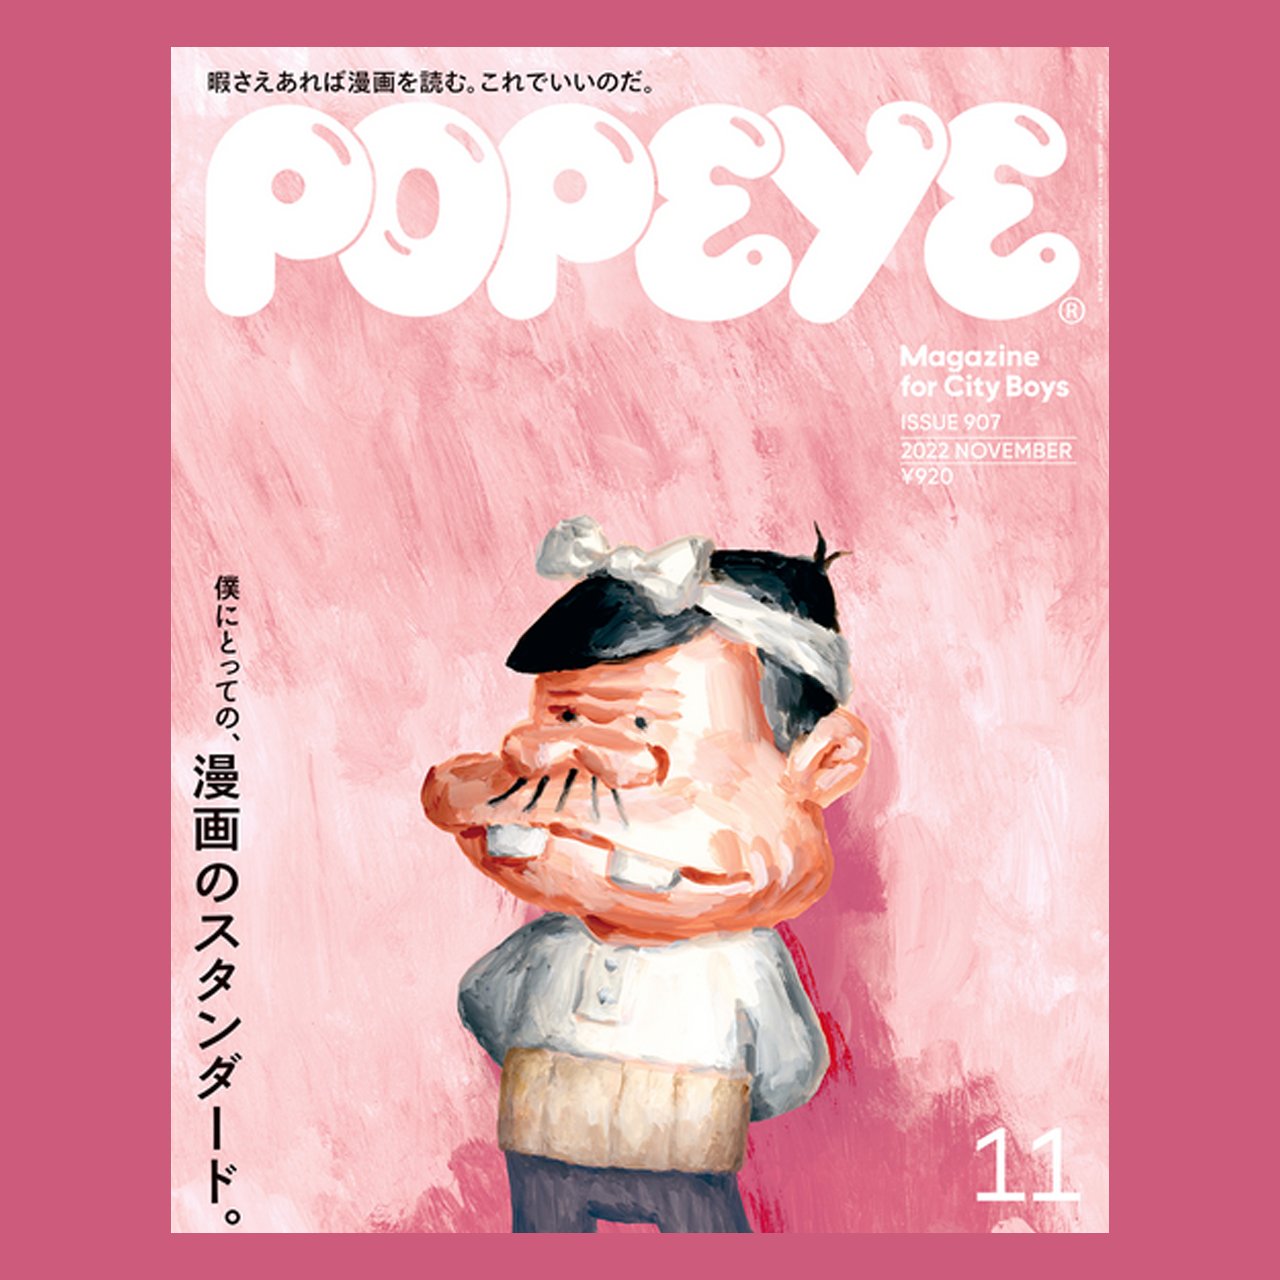 メゾン・プティ・ルナールがPopeye（10/7発売）で紹介されました。